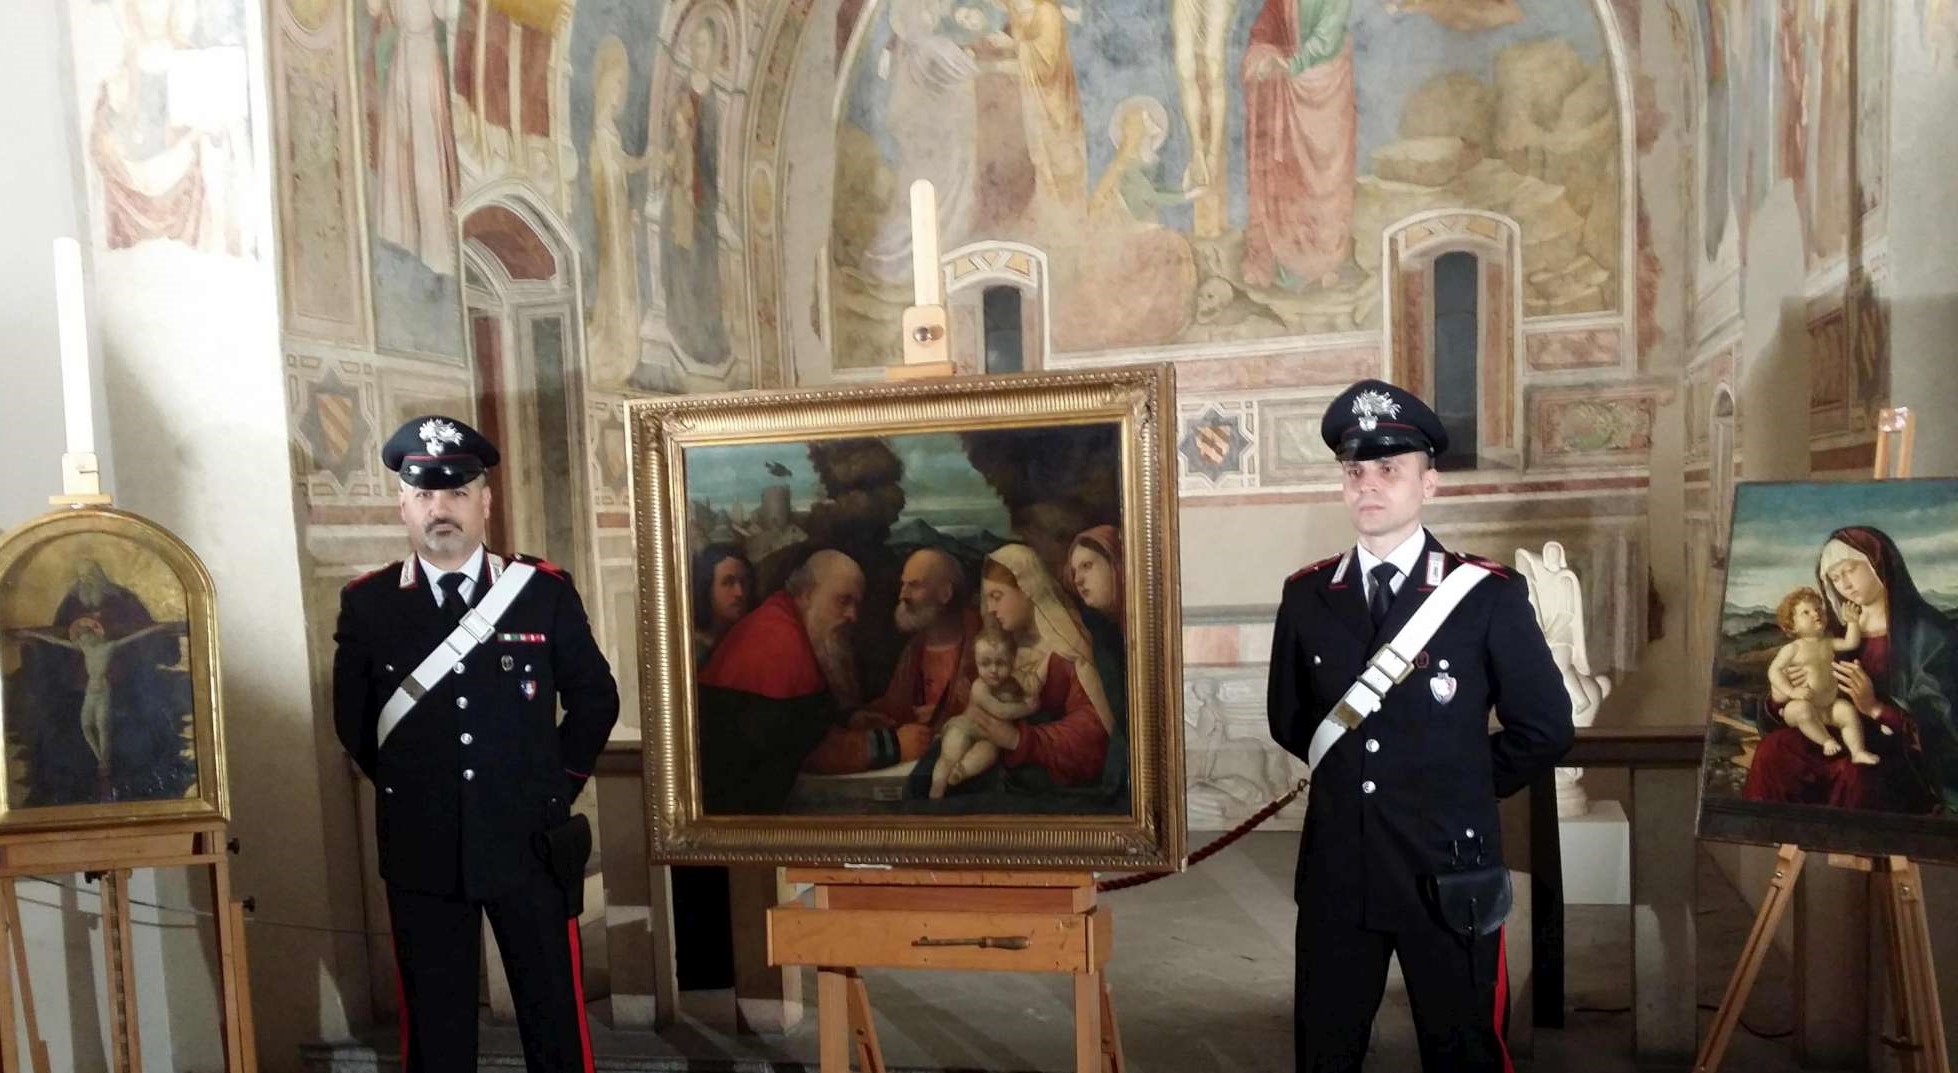 Carabinieri stolen art